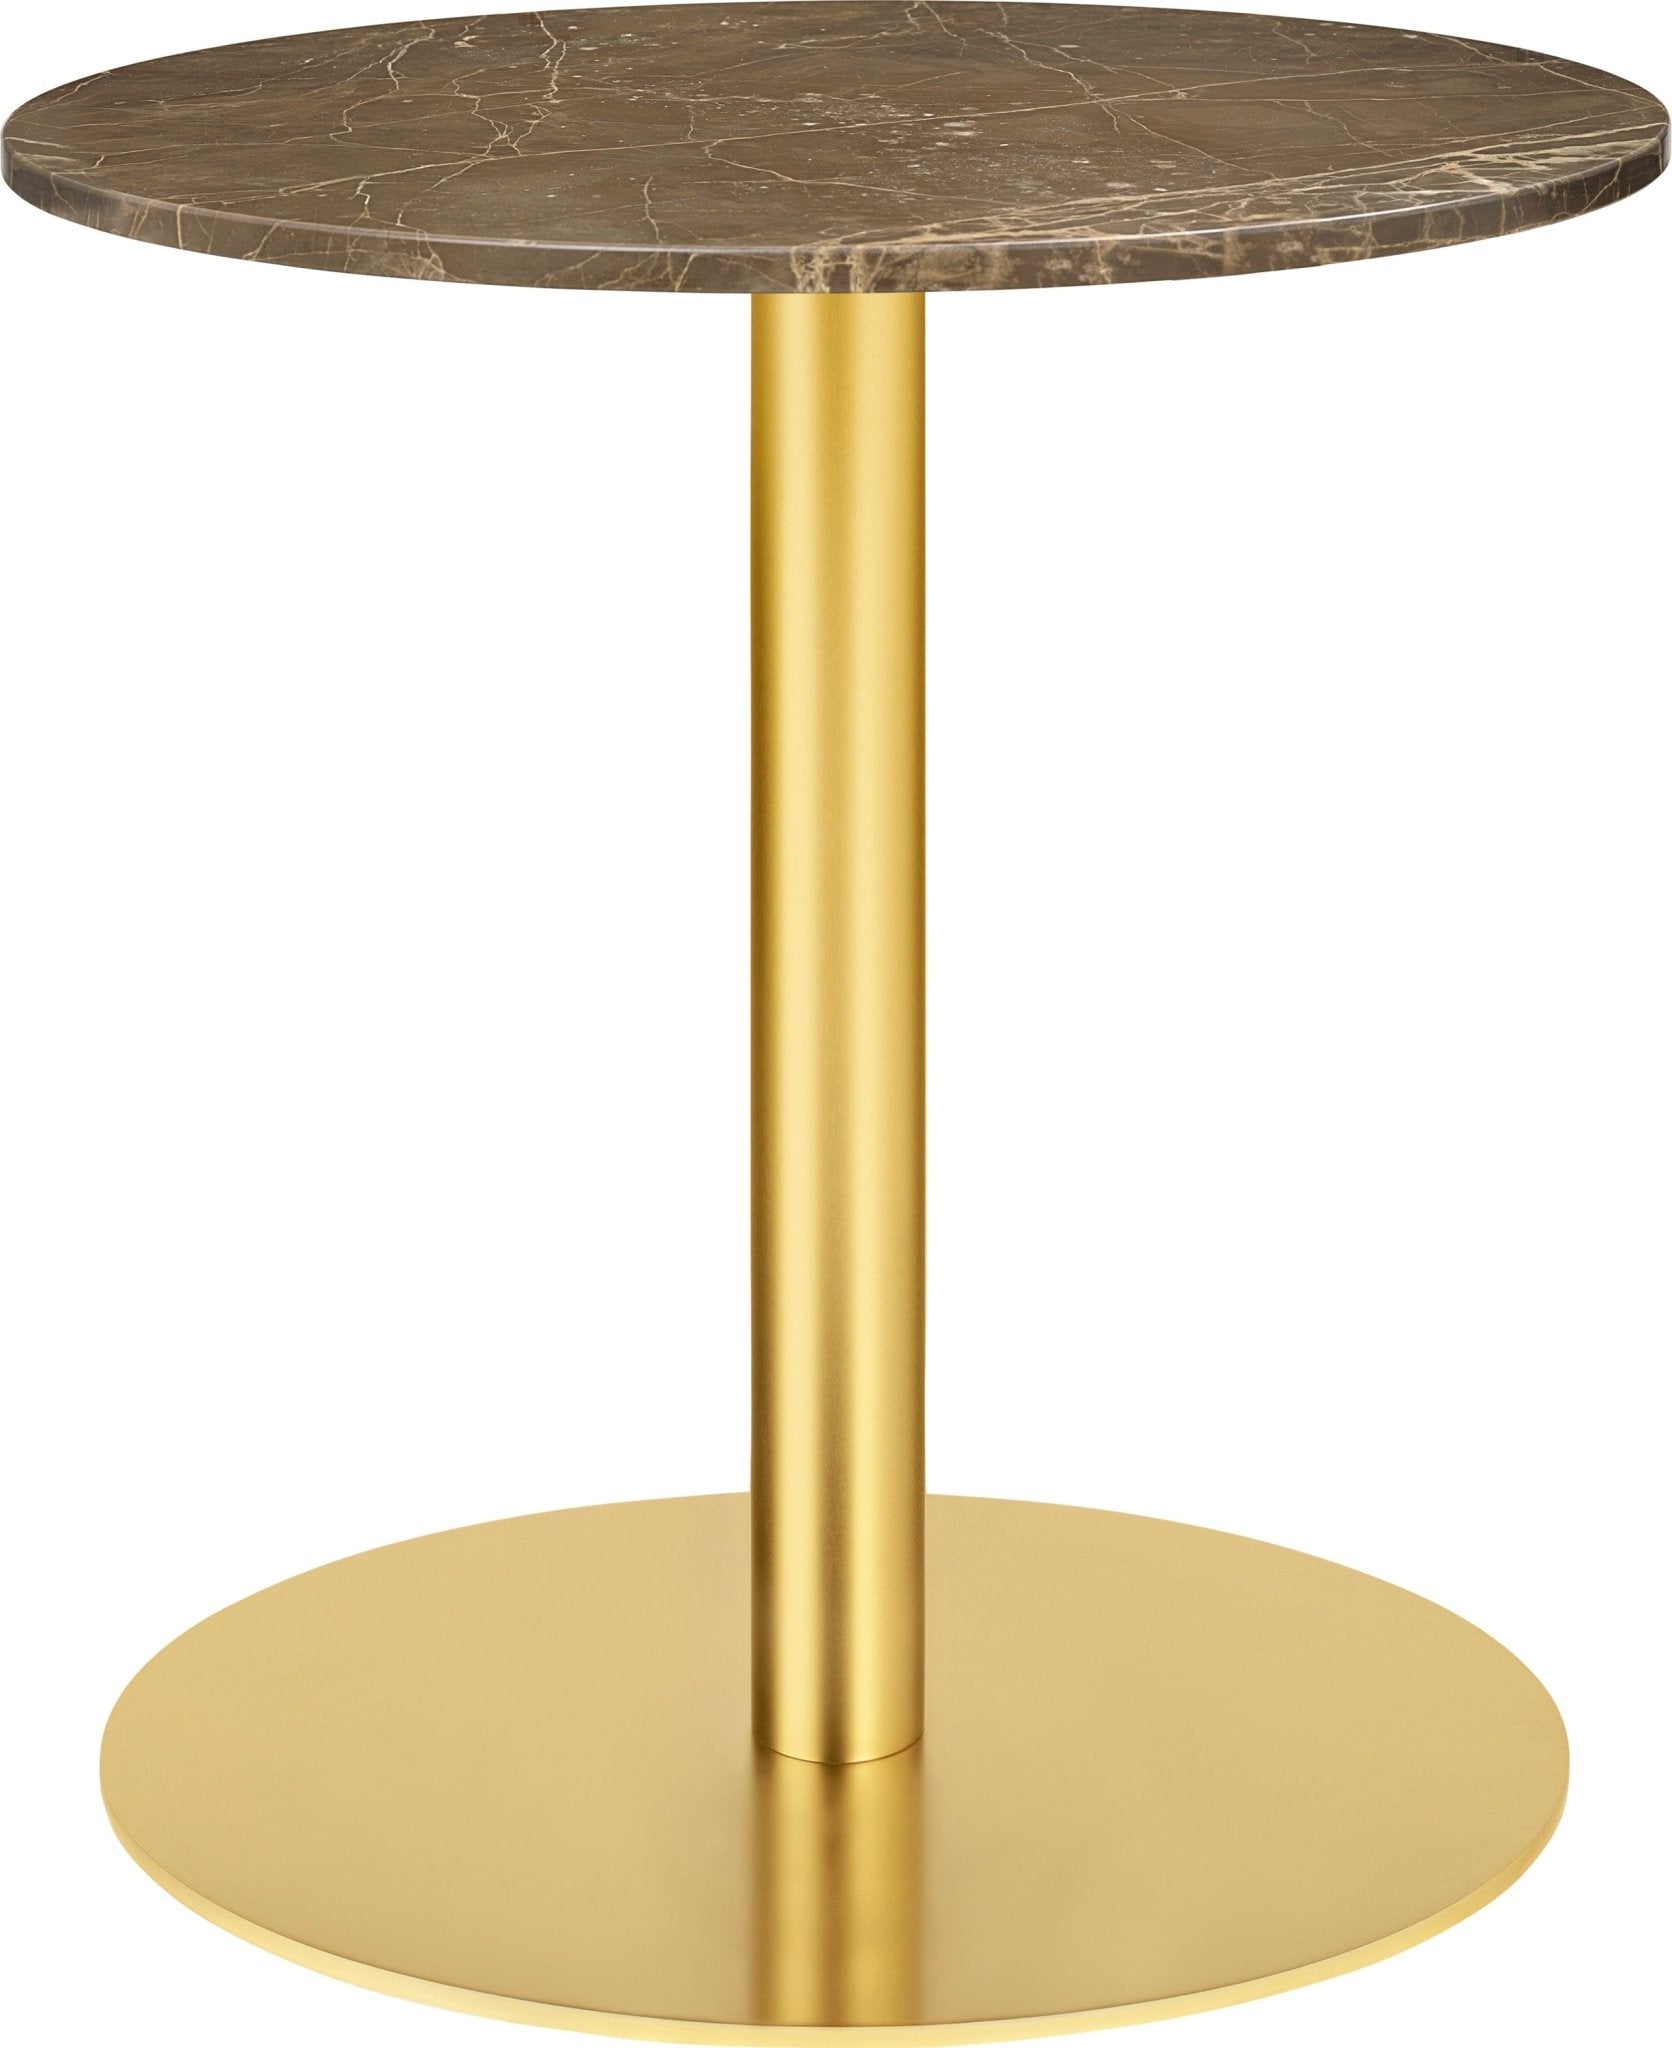 Gubi 1.0 Round Lounge Table - Ø60 - Brass / Brown Emperador